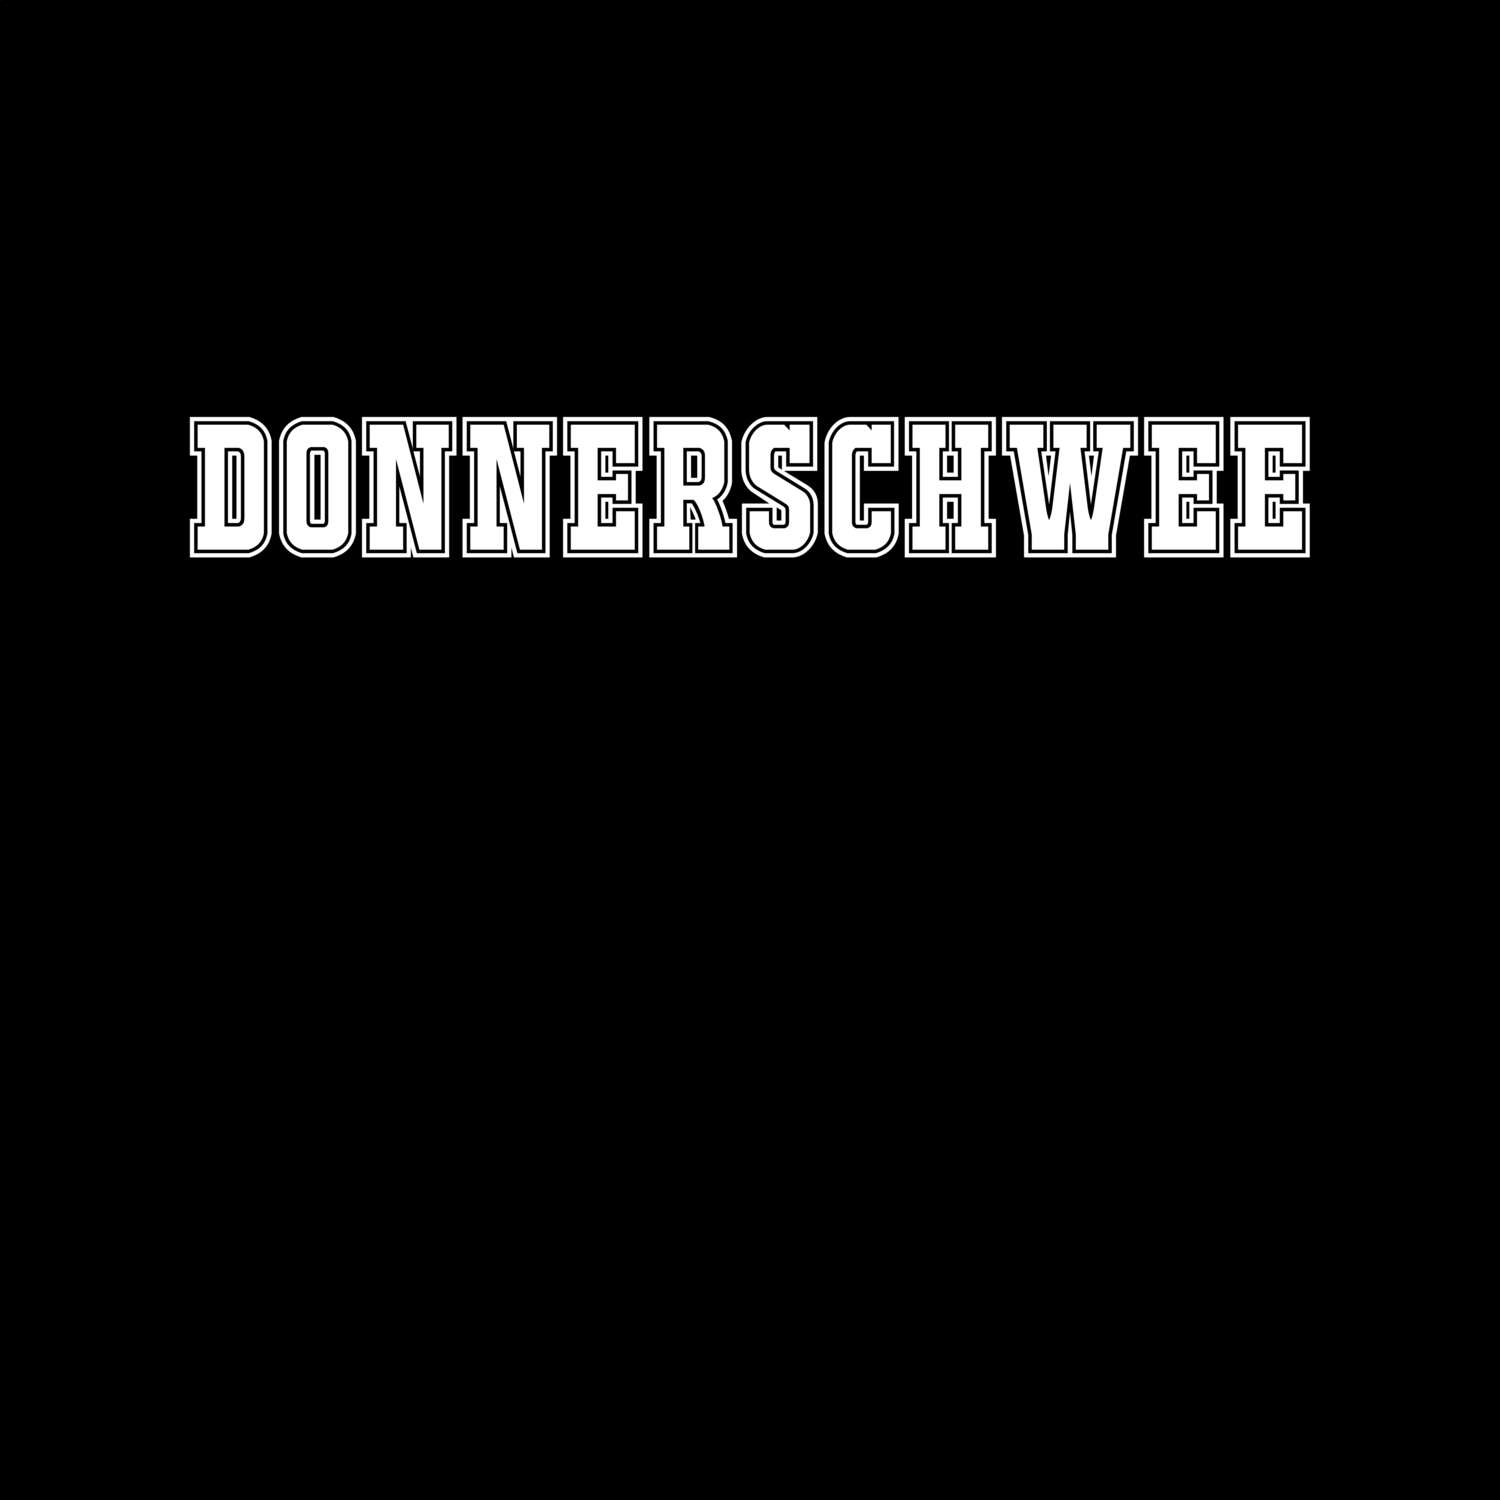 Donnerschwee T-Shirt »Classic«